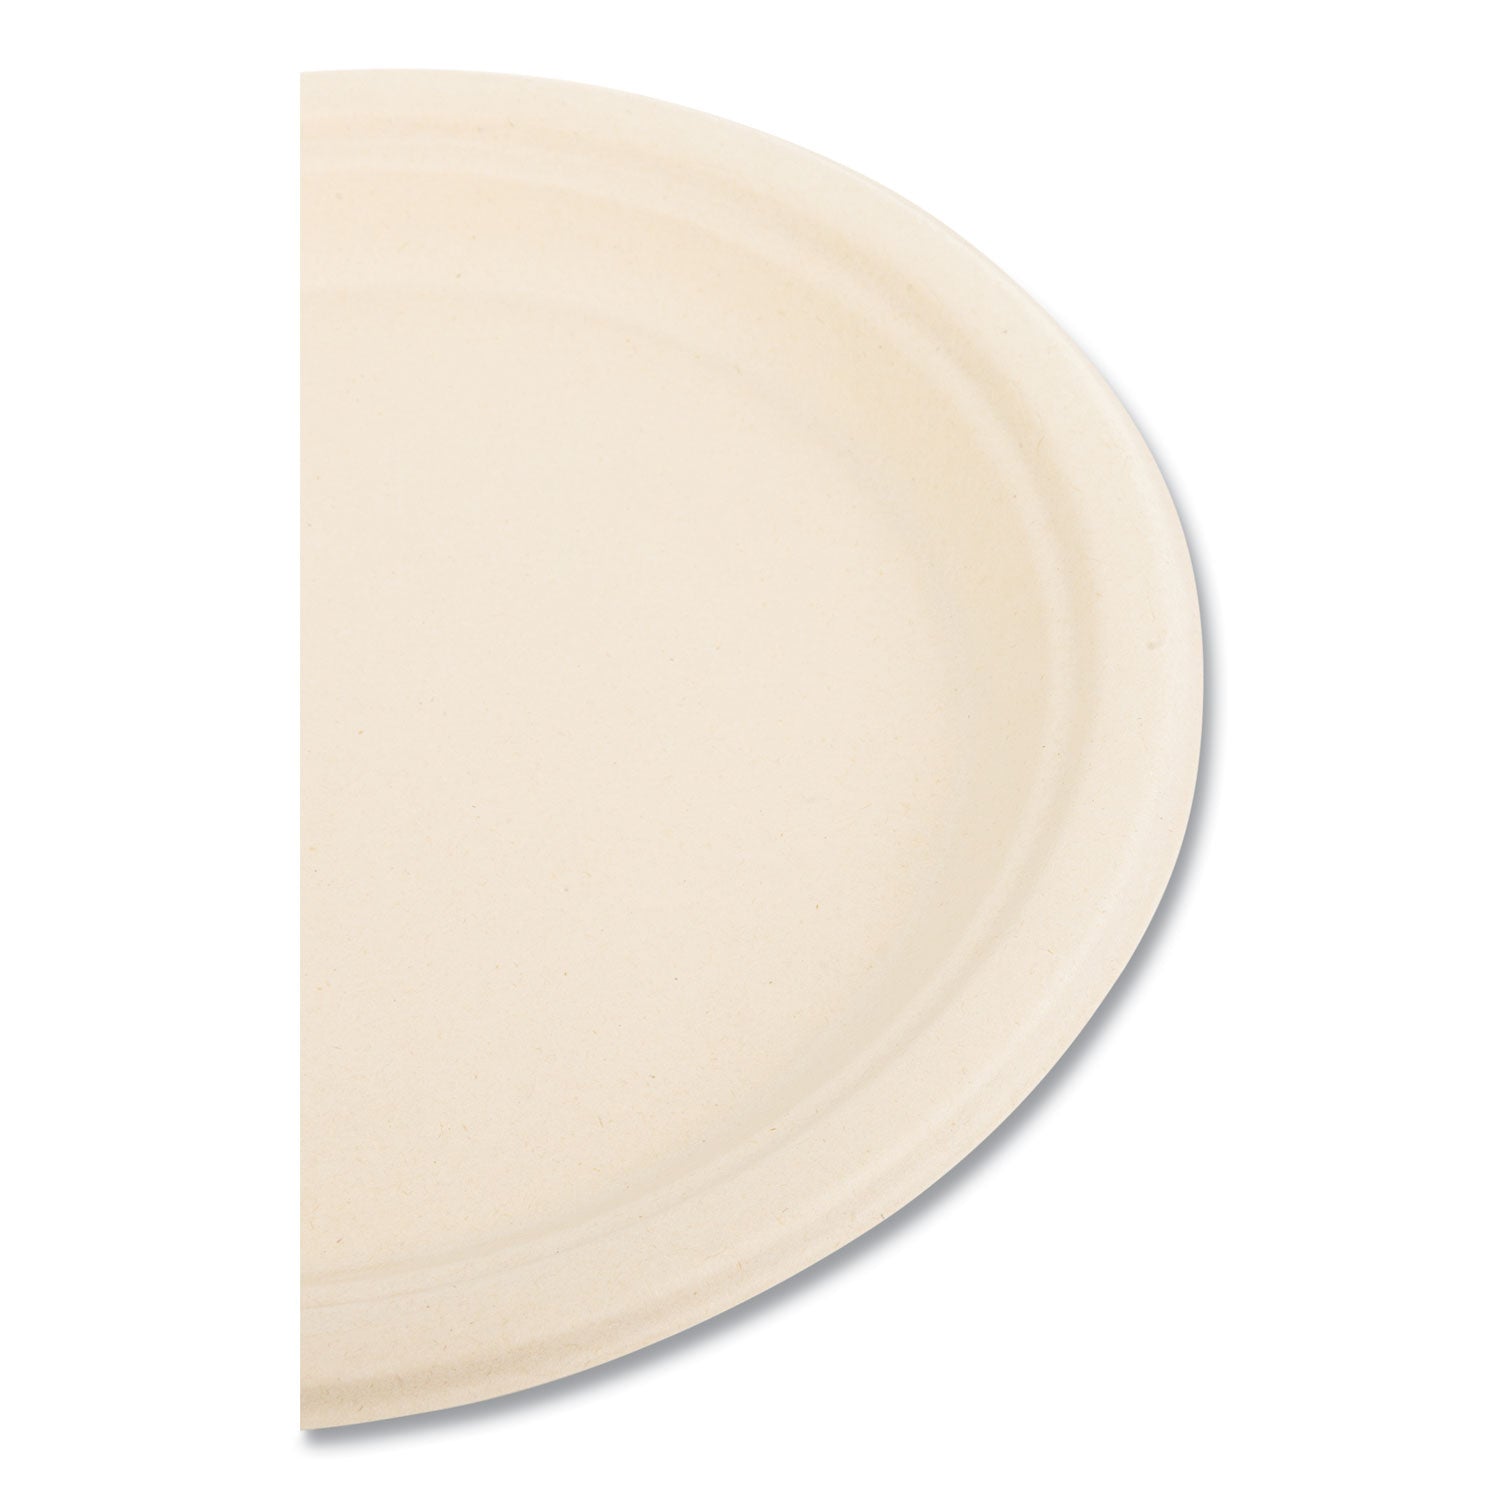 bagasse-pfas-free-dinnerware-plate-9-dia-tan-500-carton_bwkplate9npfa - 5